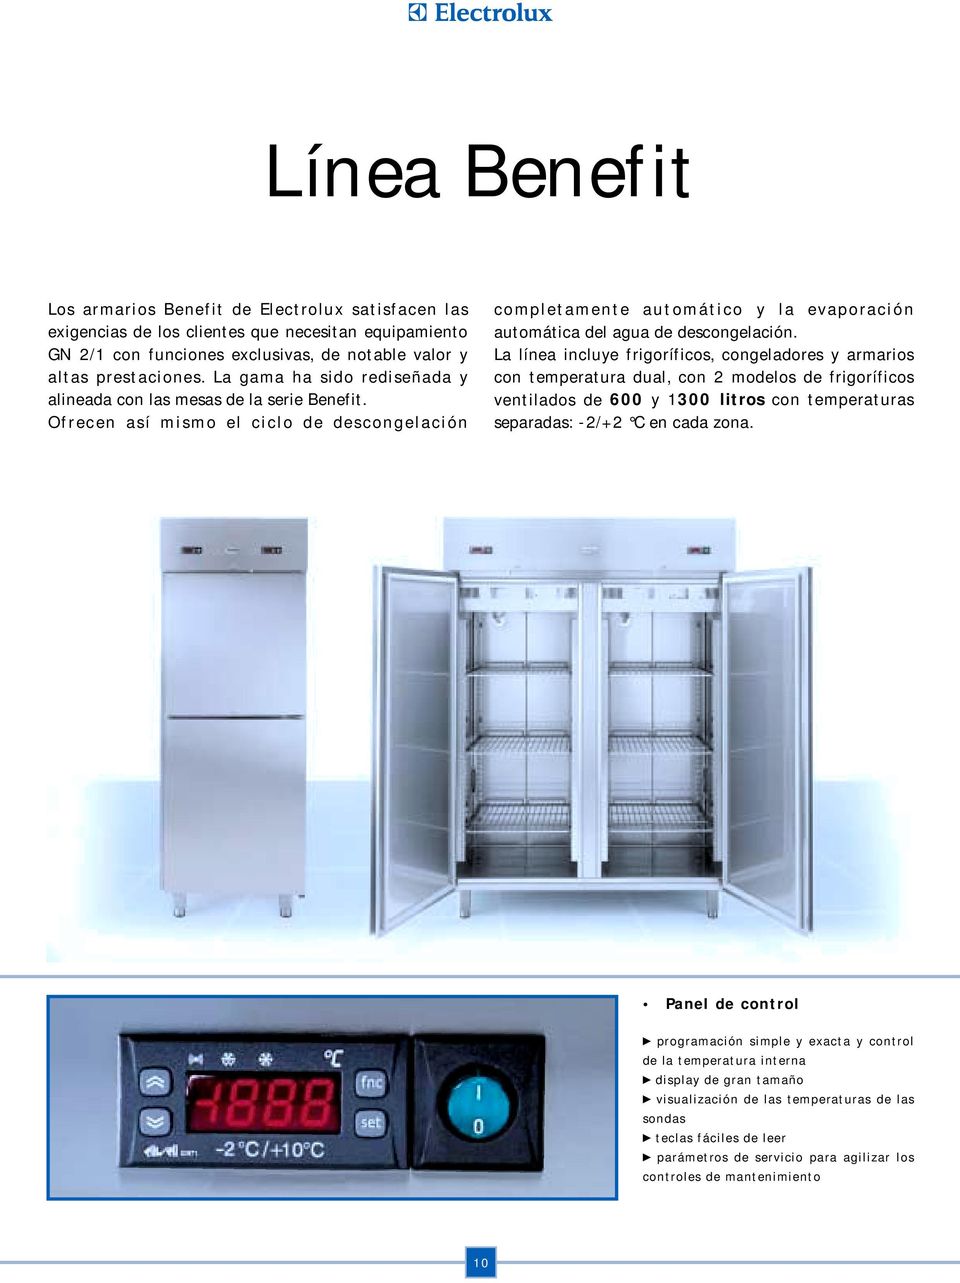 La línea incluye frigoríficos, congeladores y armarios con temperatura dual, con 2 modelos de frigoríficos ventilados de 600 y 1300 litros con temperaturas separadas: -2/+2 C en cada zona.